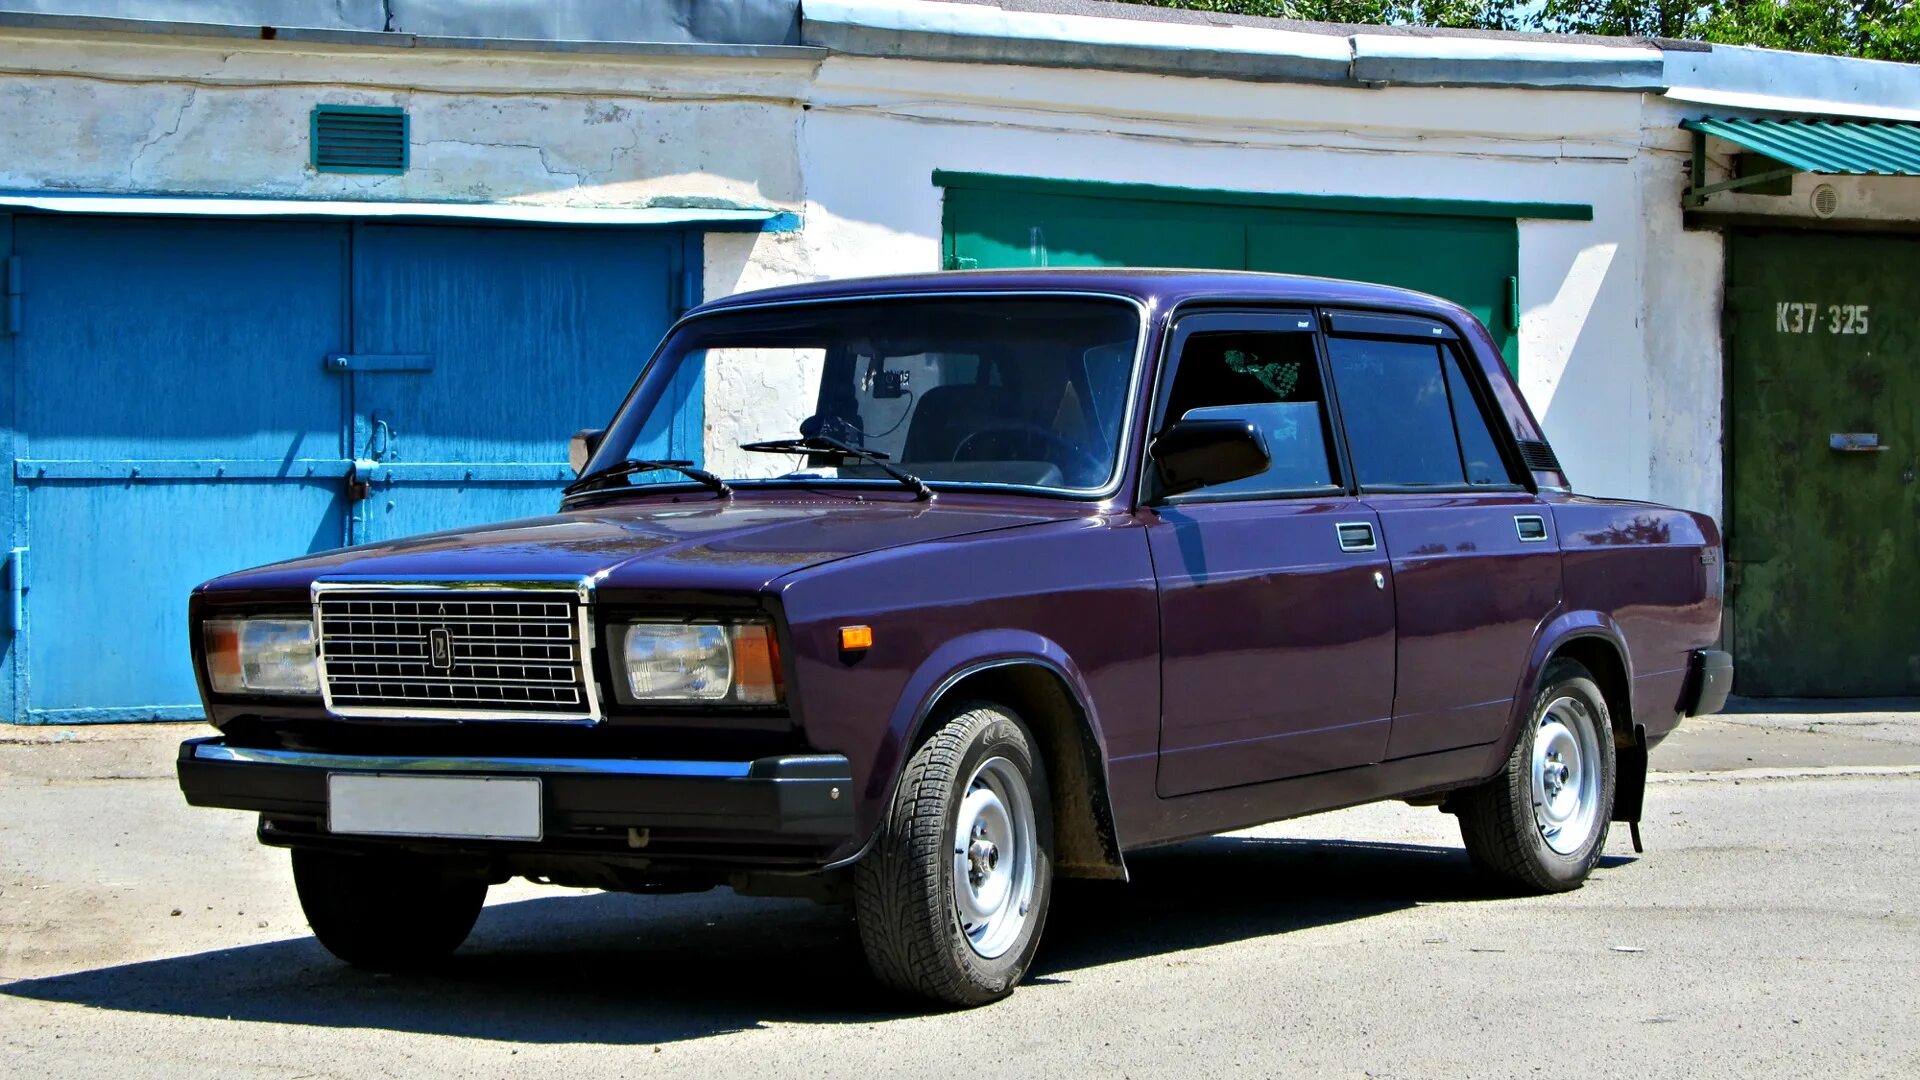 Продажа автомобиля жигули. ВАЗ-2107 «Жигули». ВАЗ 2107 универсал.